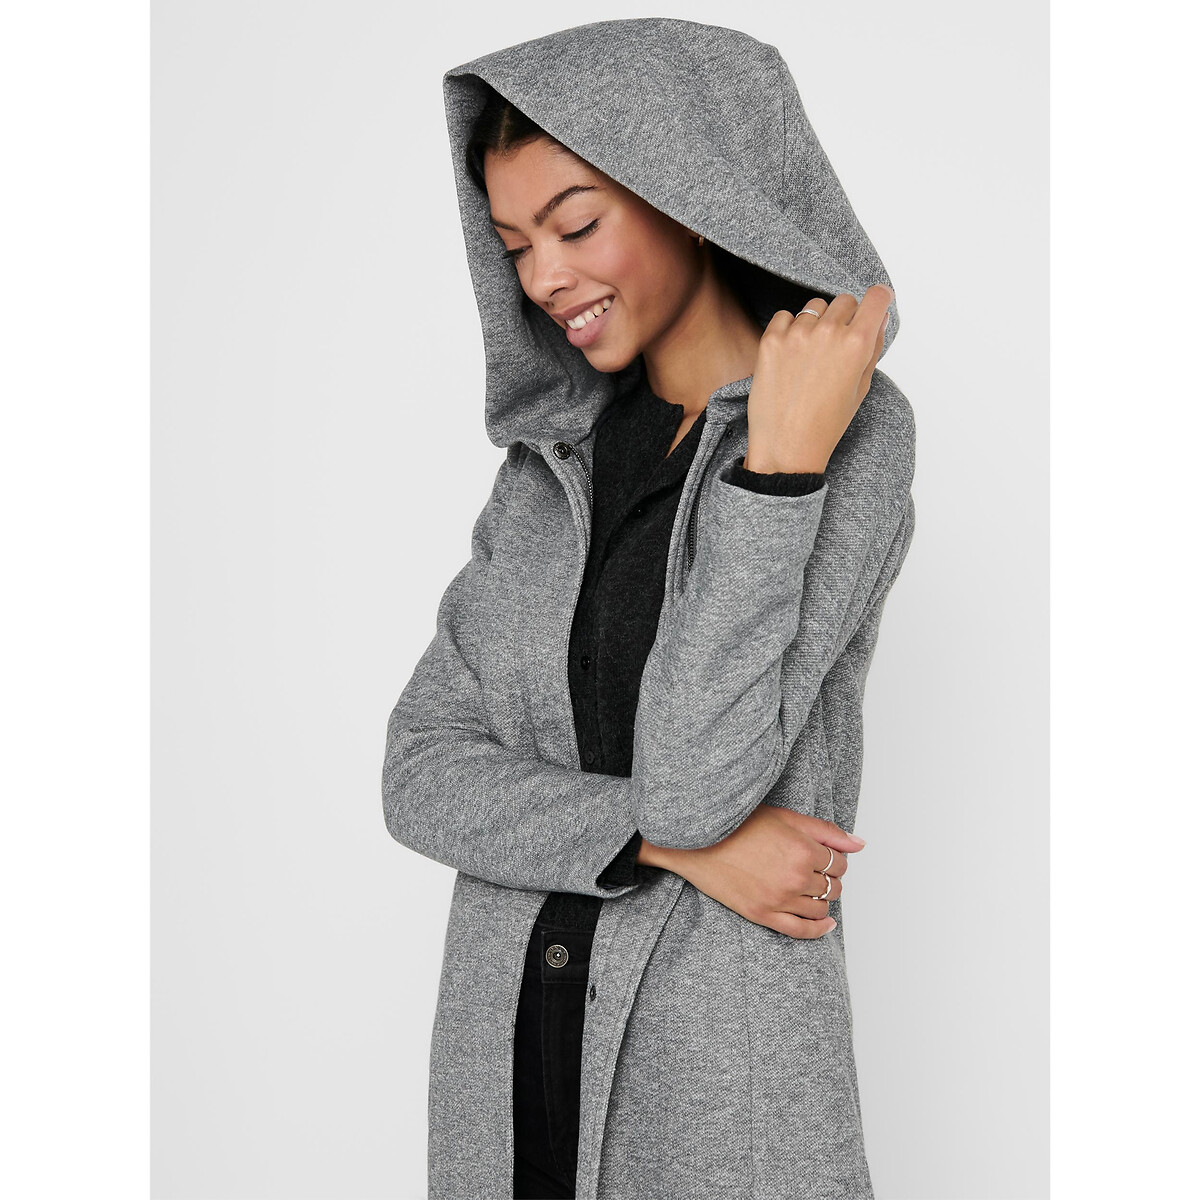 Пальто Тонкое с капюшоном из бархатистого материала XL серый LaRedoute, размер XL - фото 2